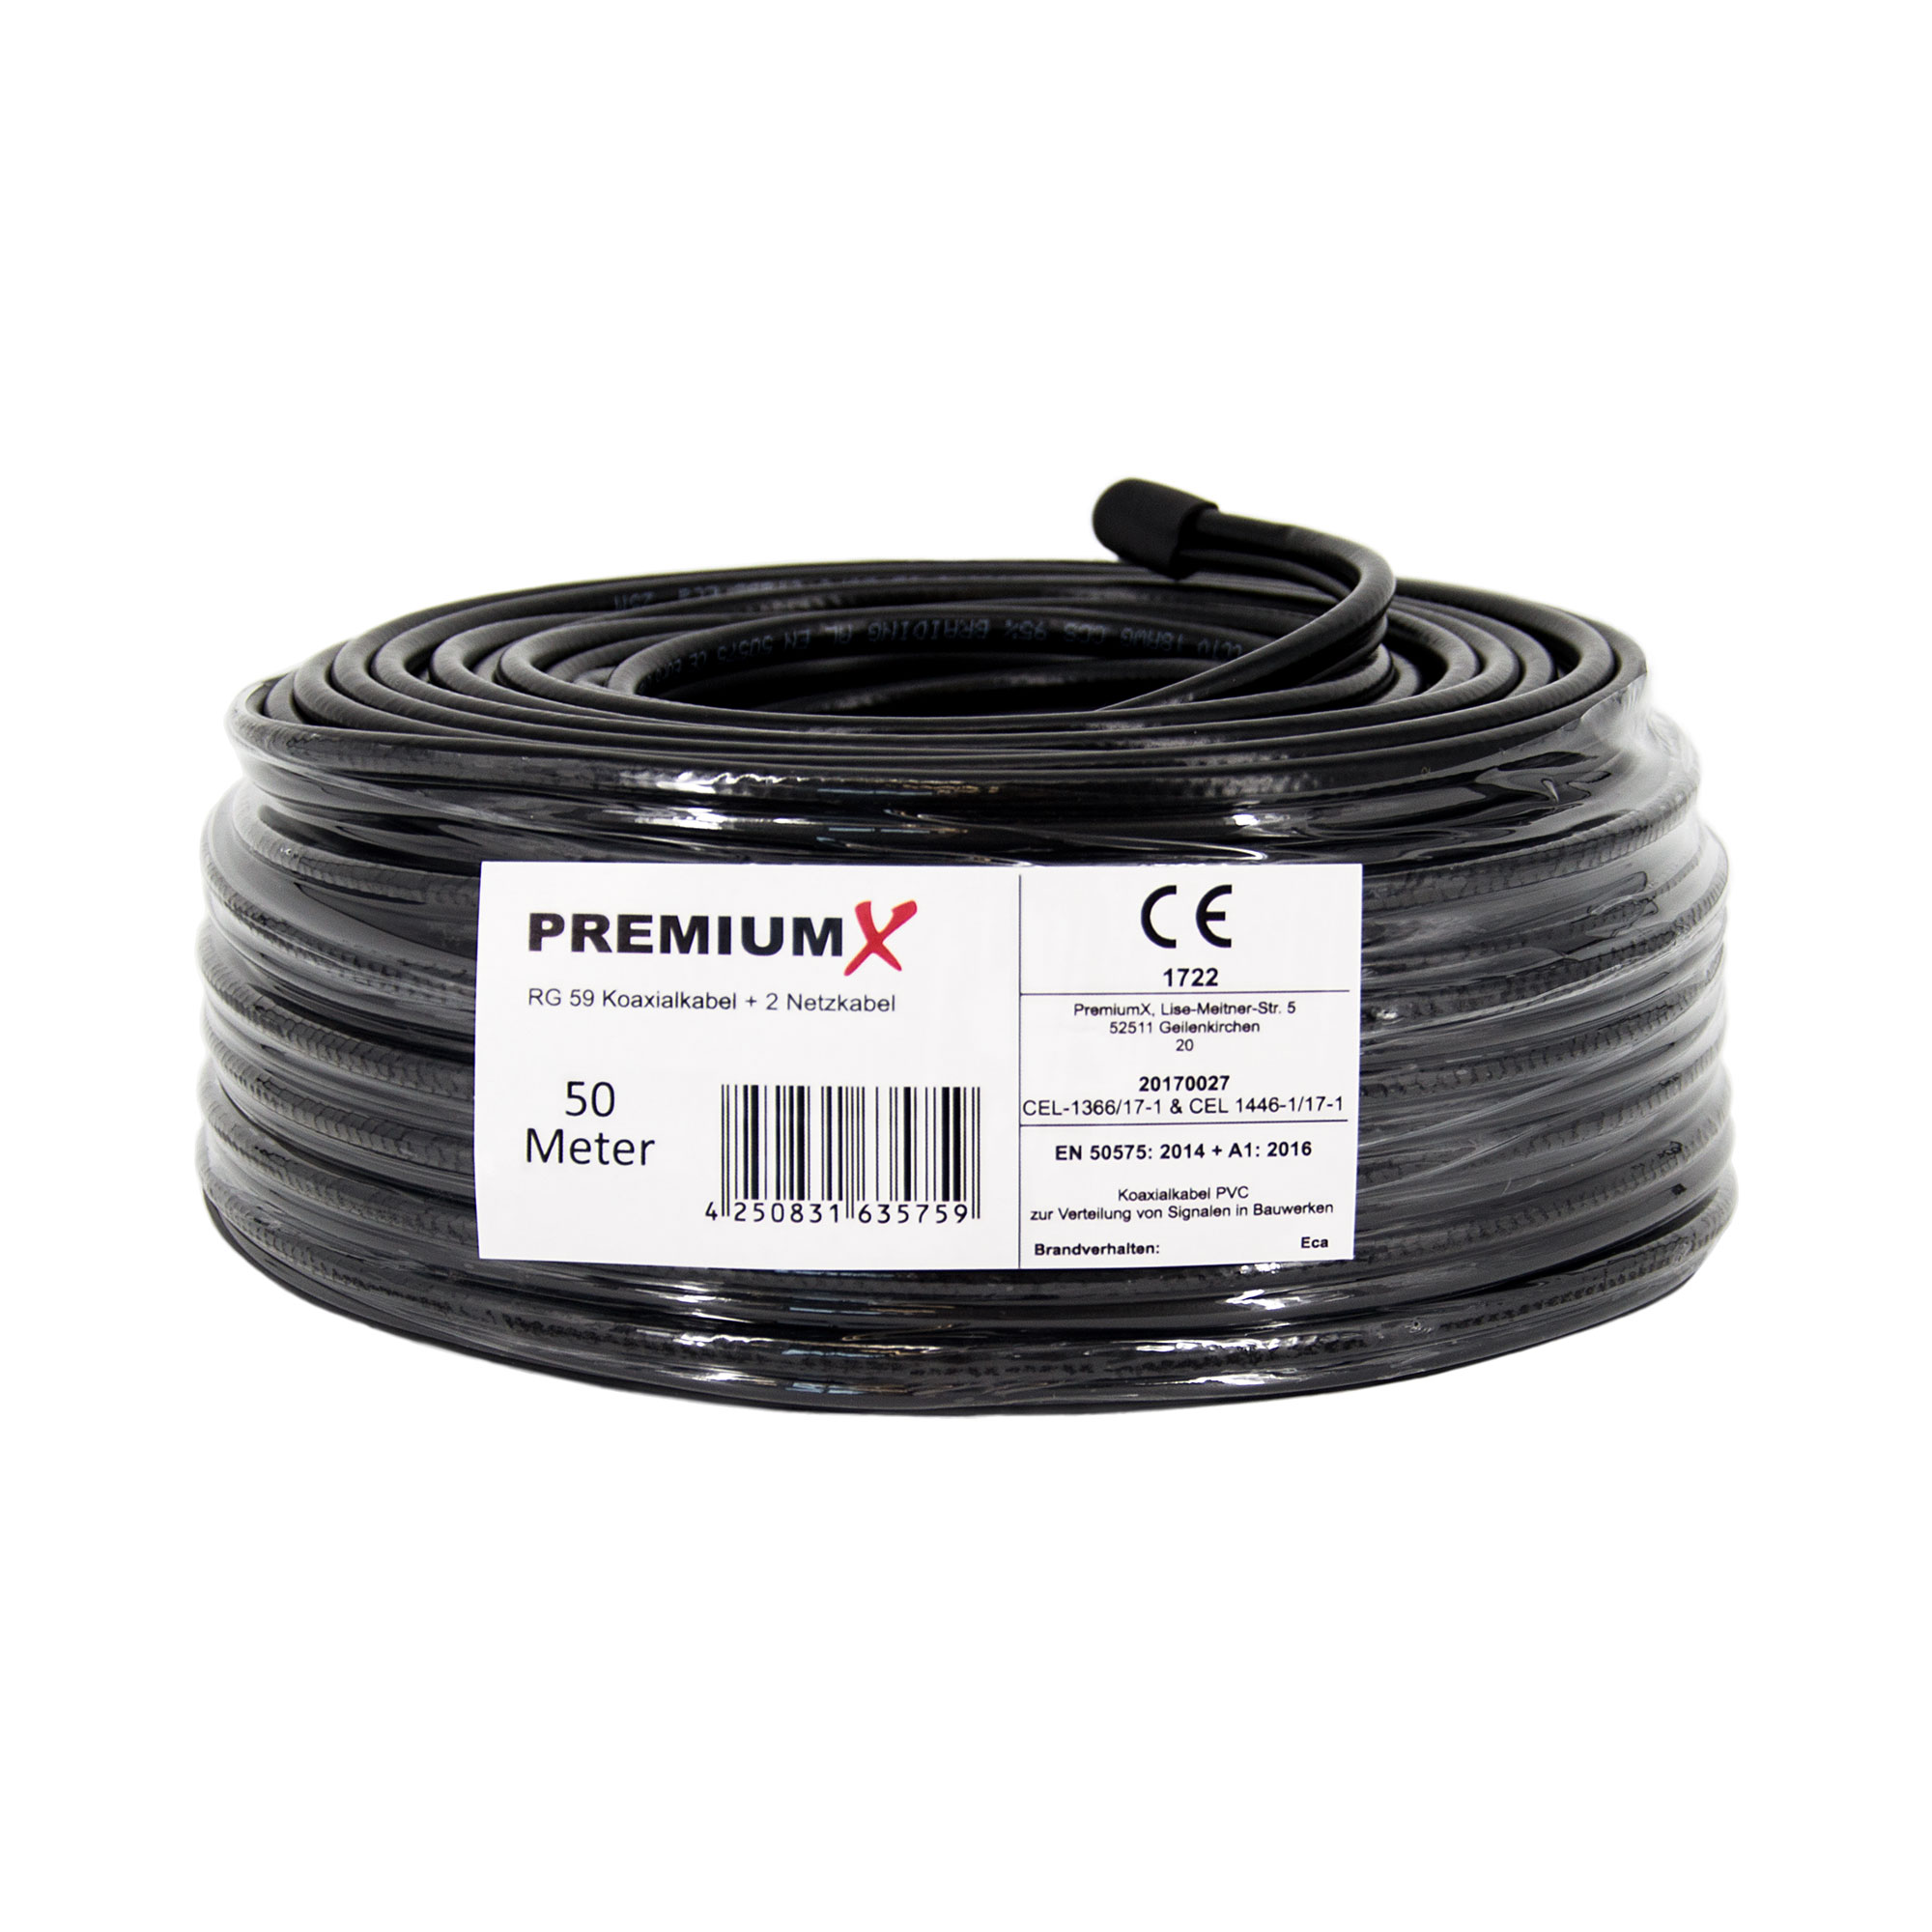 PREMIUMX 50m RG59 Koaxialkabel Eca Stromversorgung Videobild 2 + Videokabel und Netzkabel